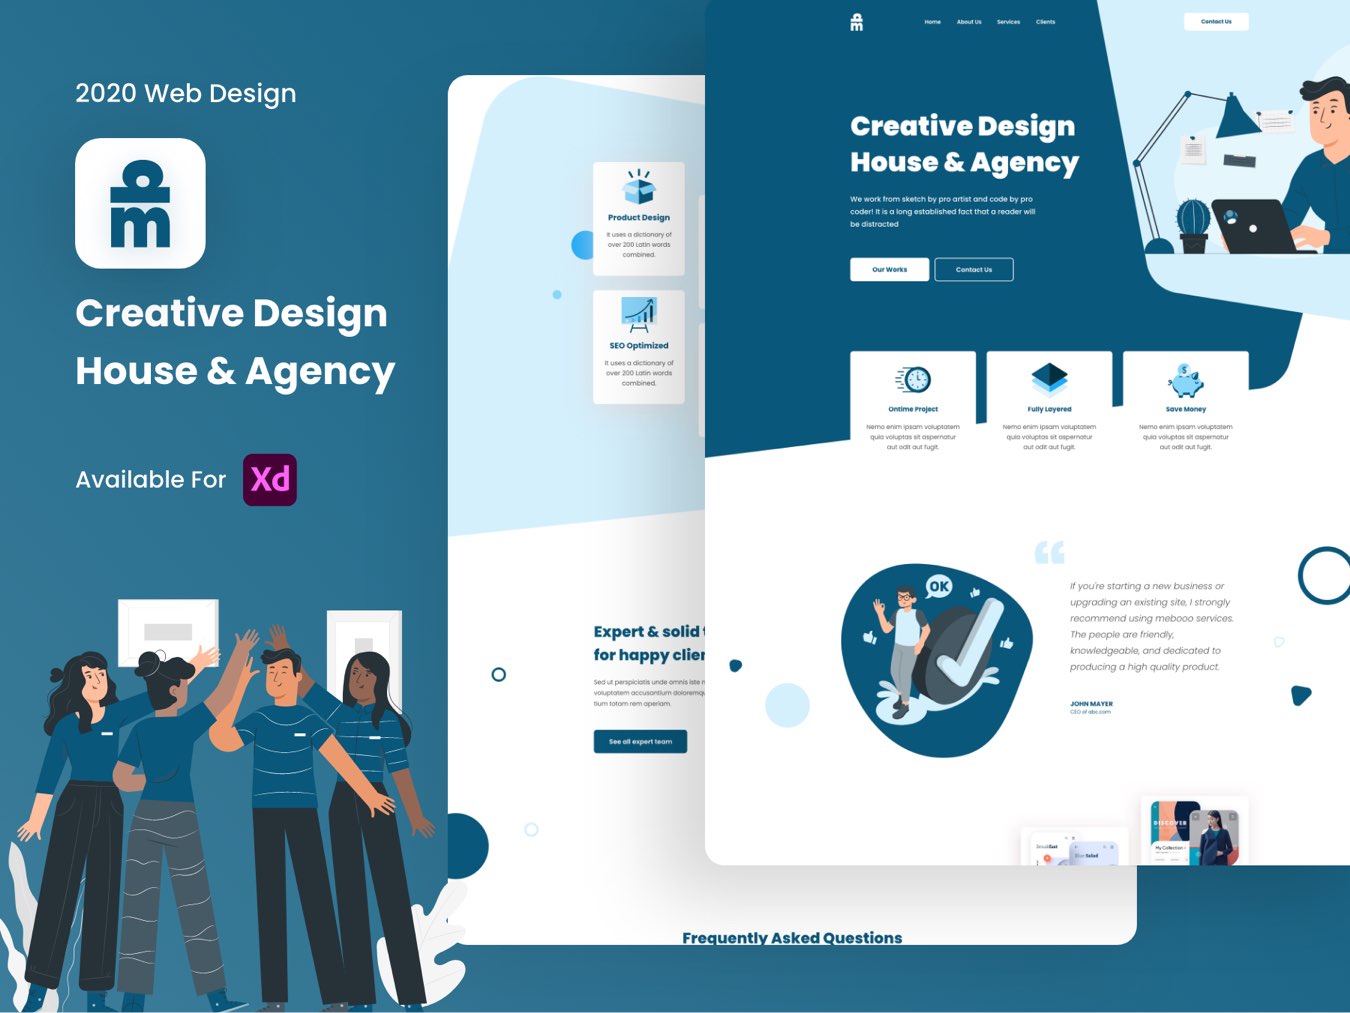 创意设计机构设计公司官网落地页WEB UI界面设计 .xd素材